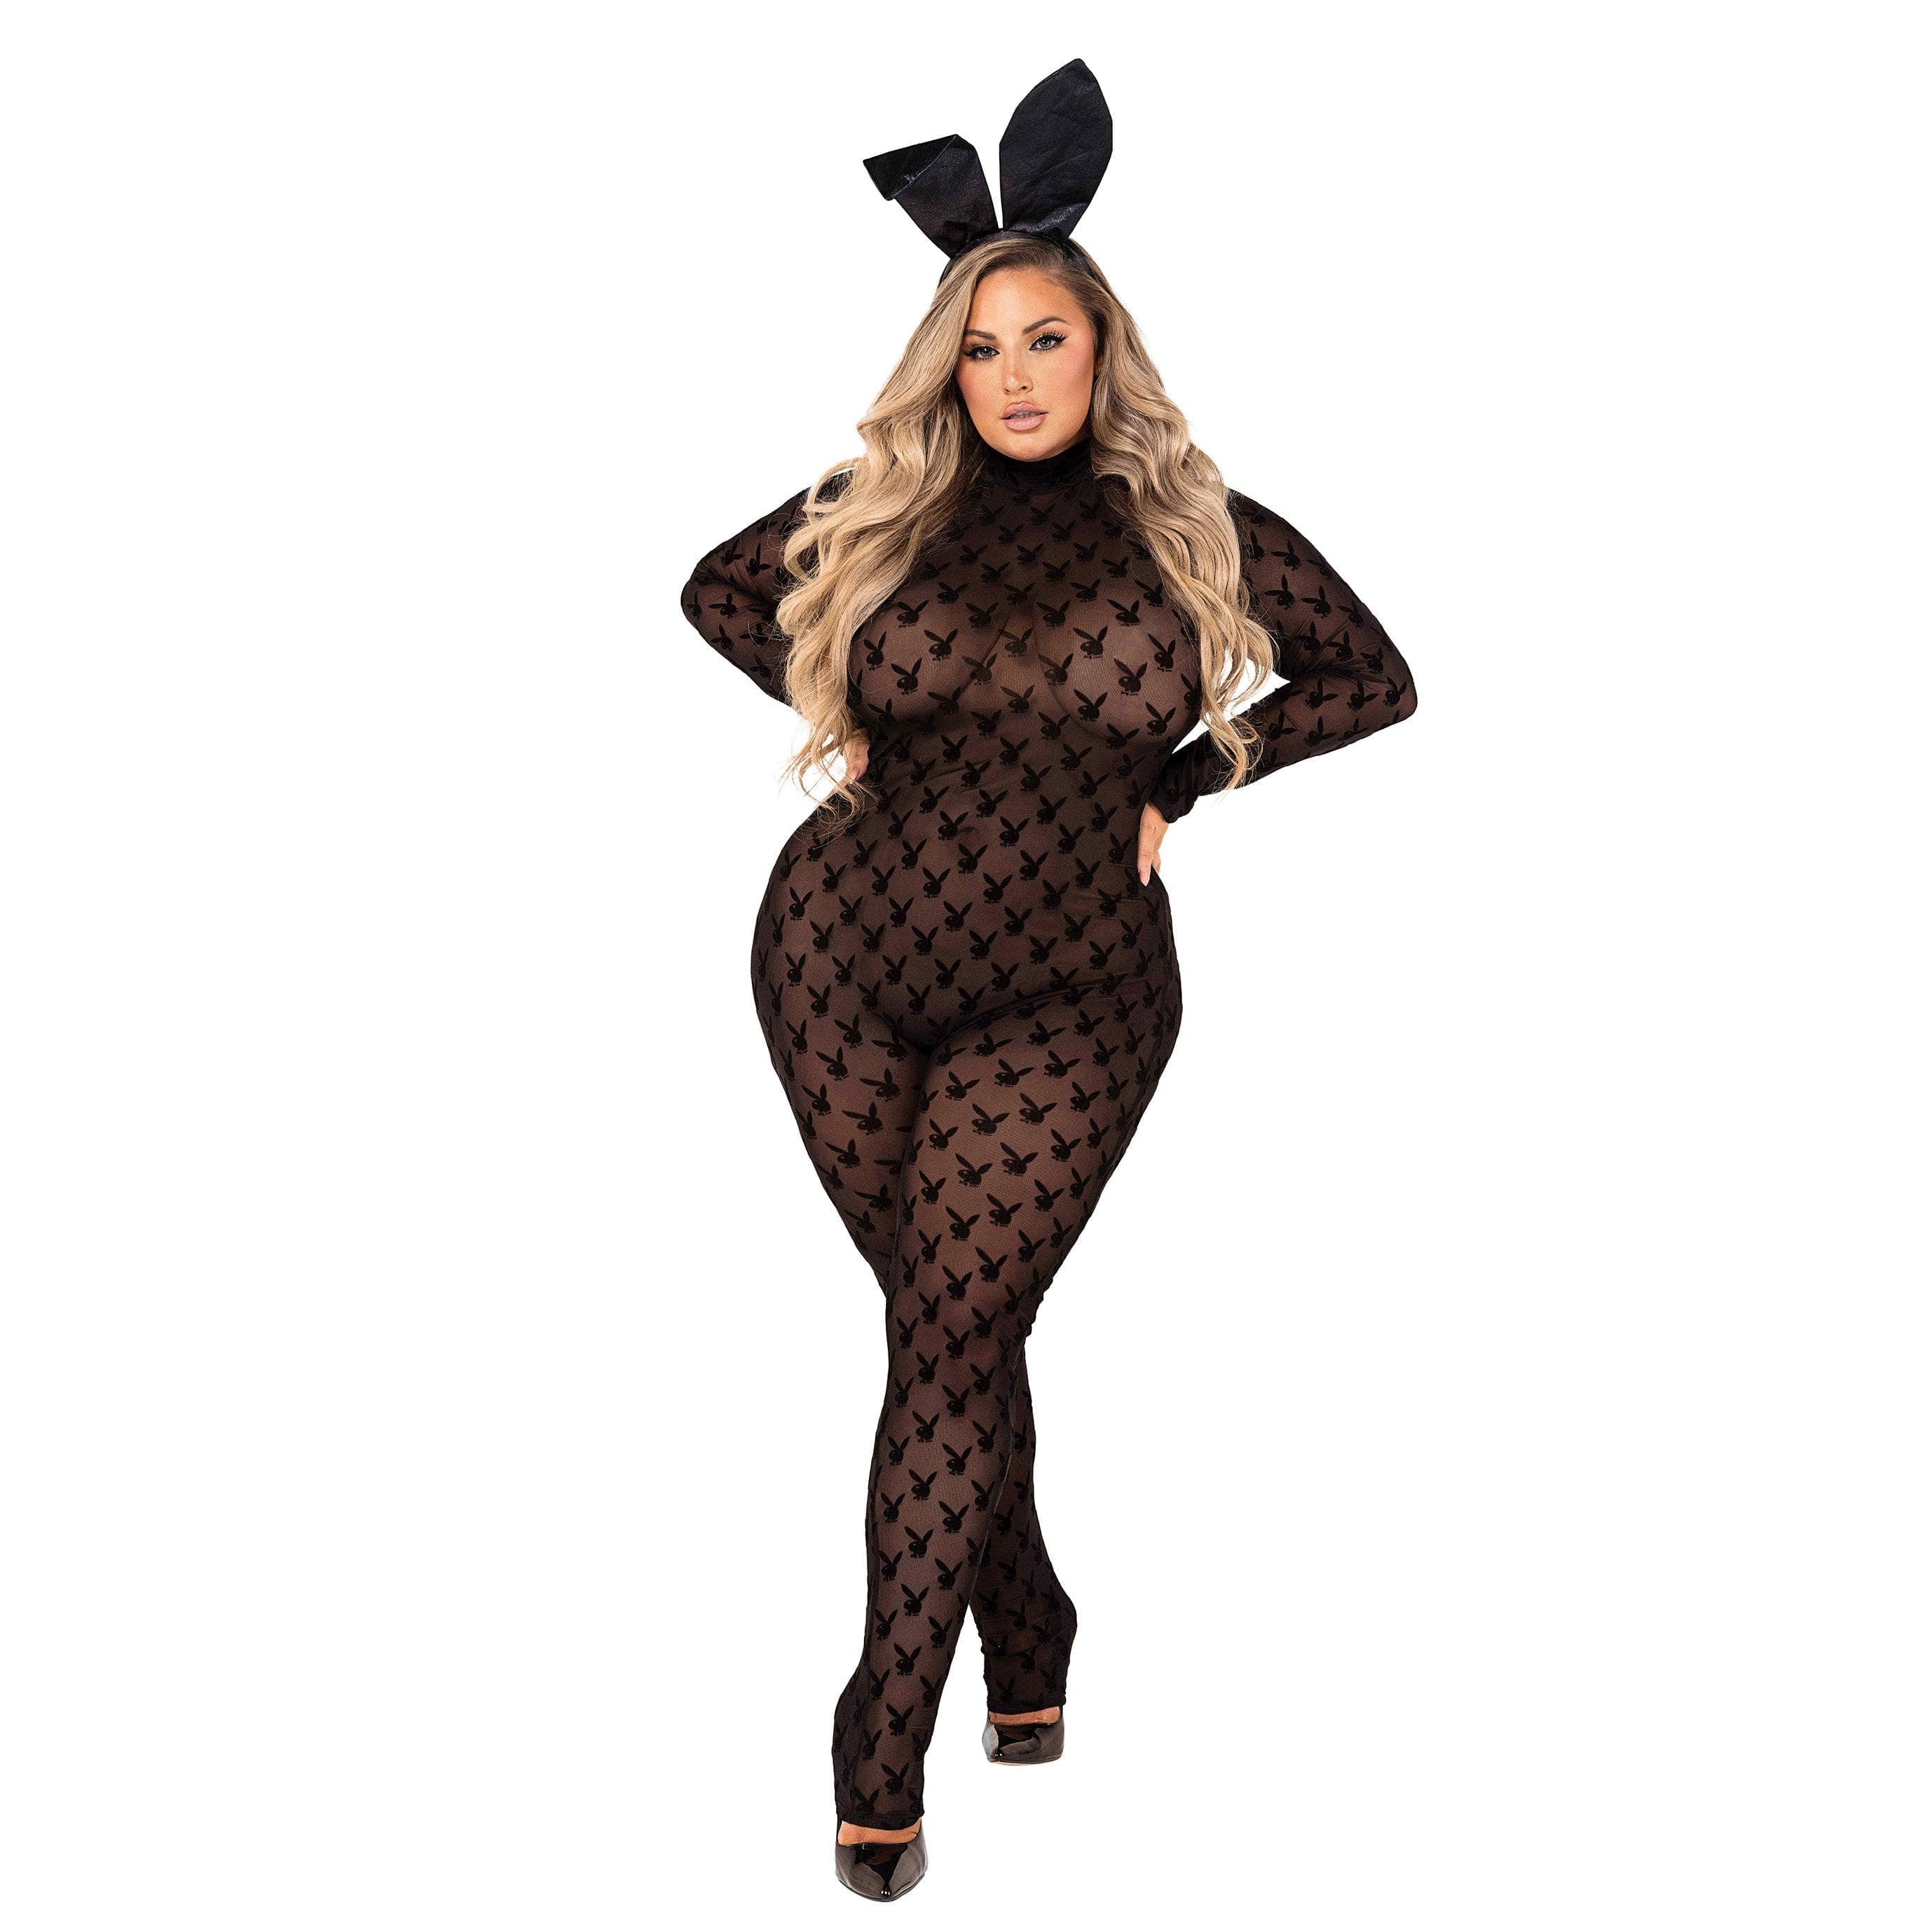 Playboy Sheer Bunny Bodysuit - 2pcs Set